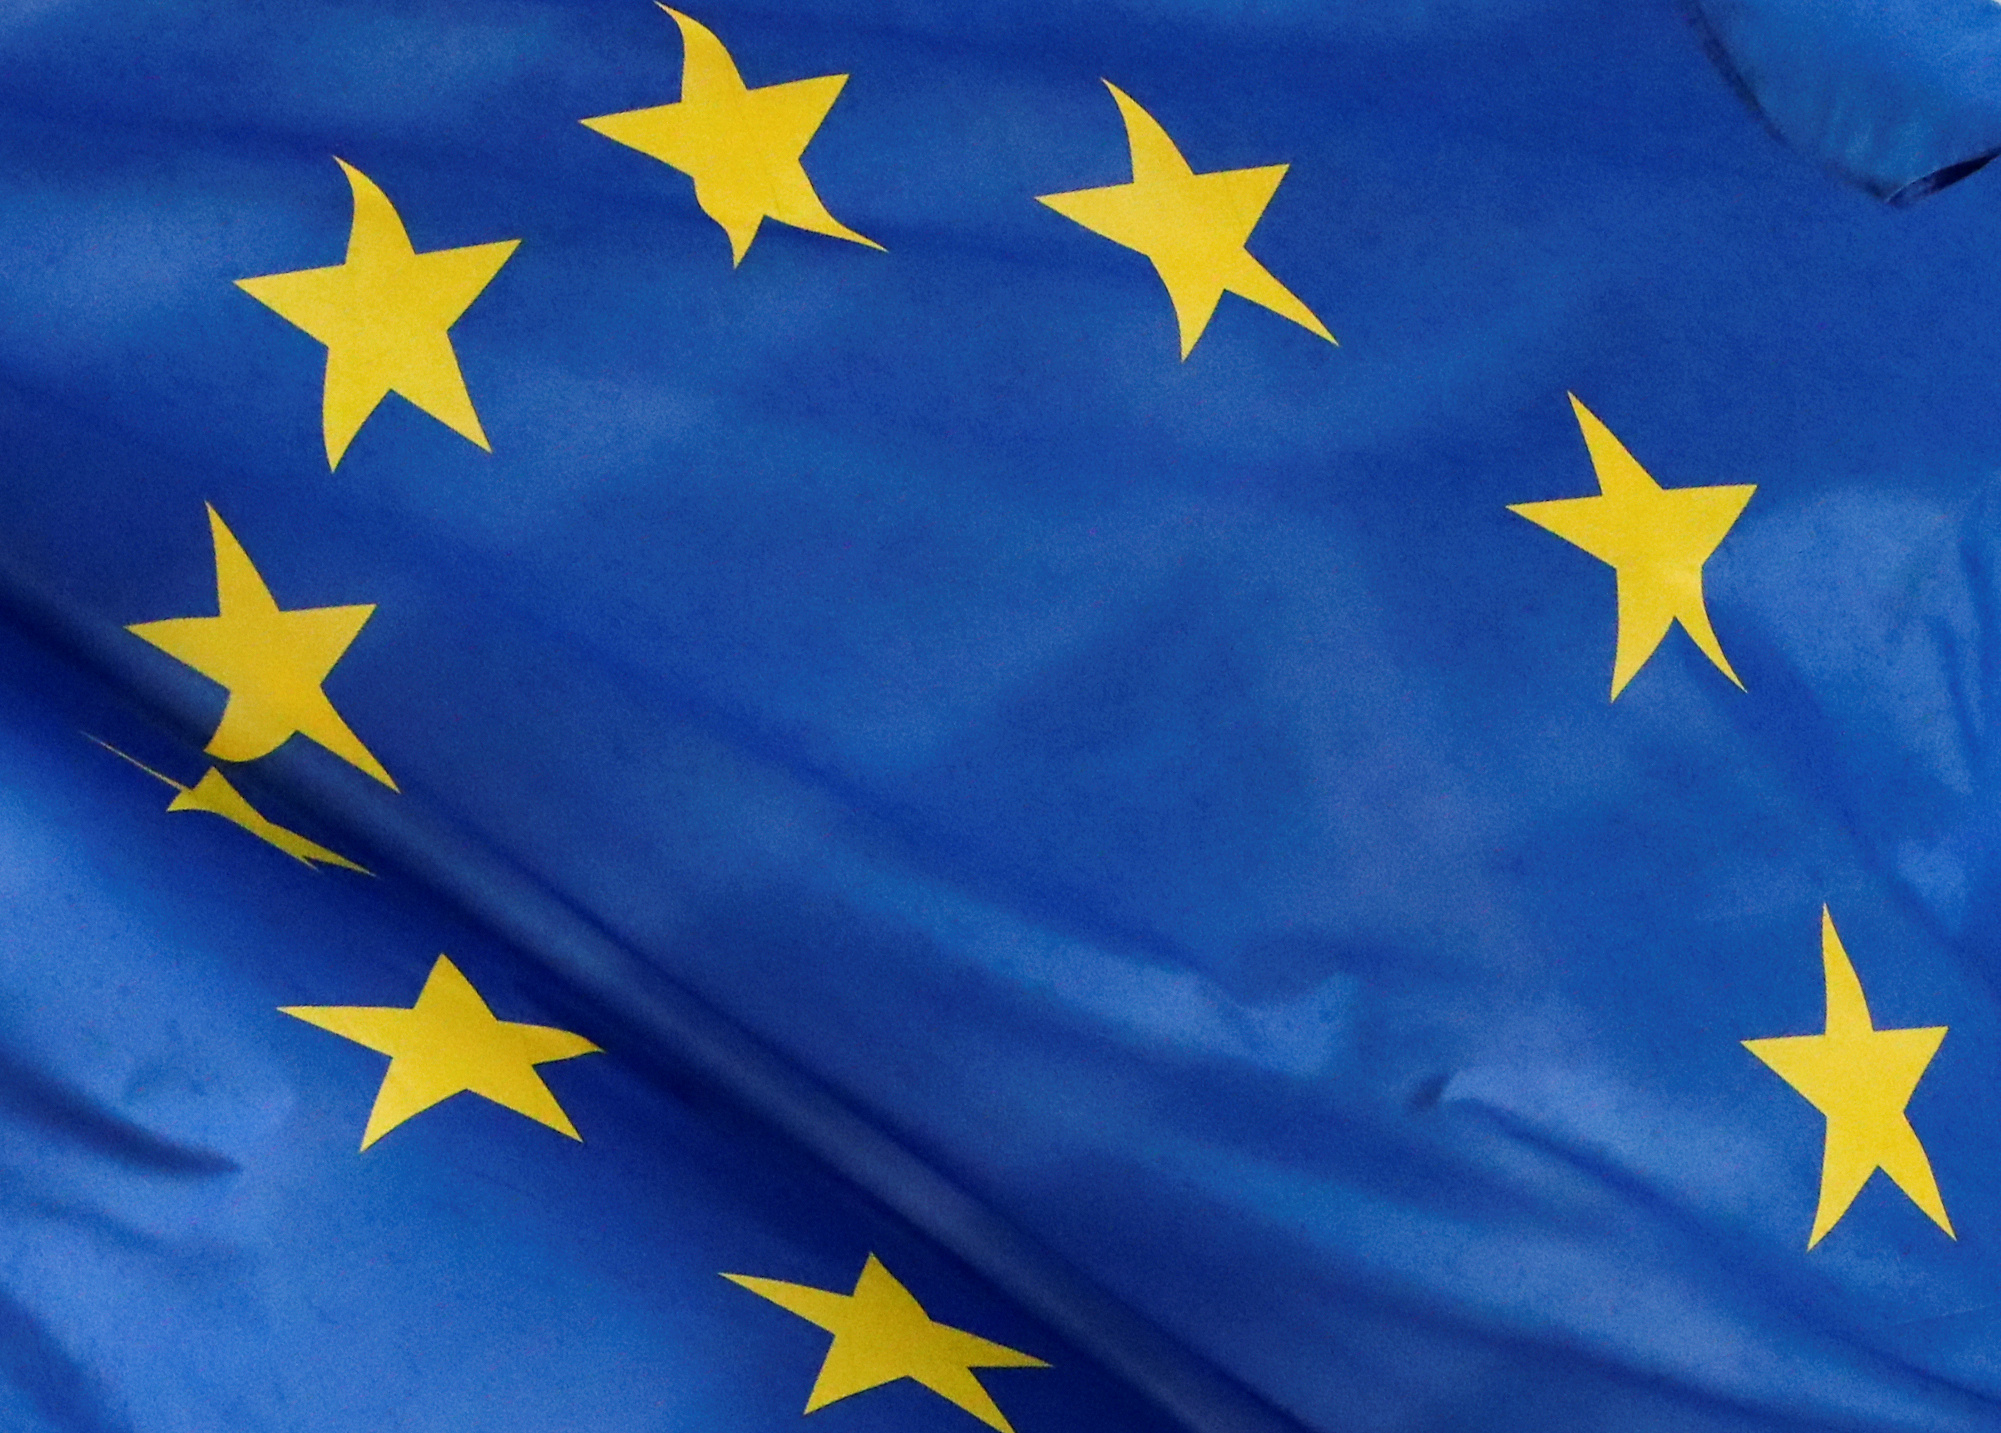 La Commission européenne revoit à la baisse ses prévisions de croissance dans la zone euro